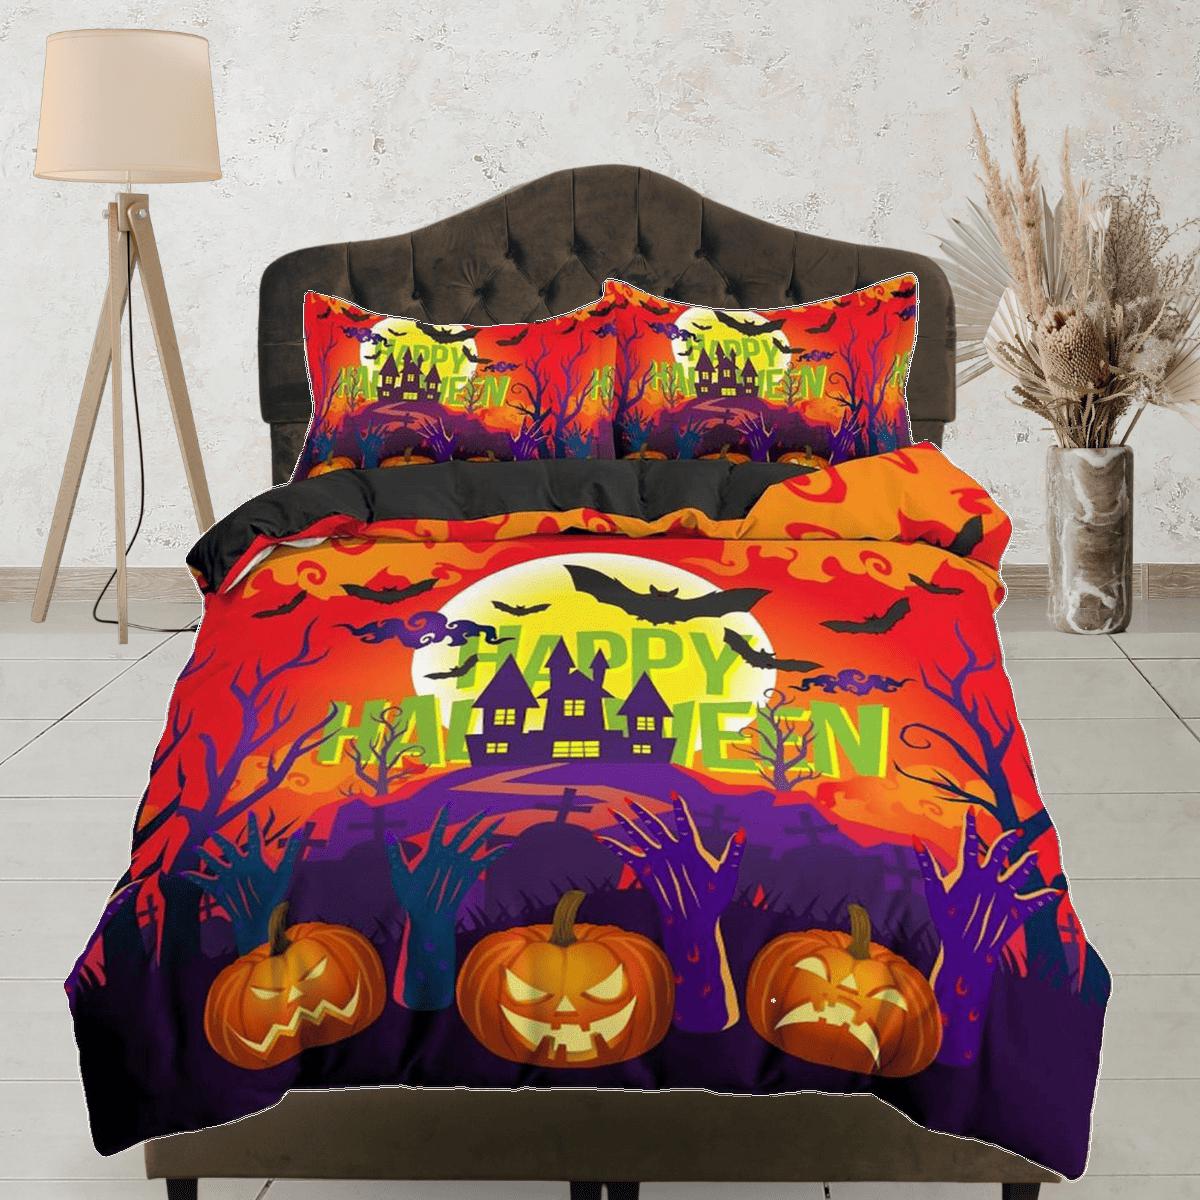 daintyduvet Happy halloween castle full size bedding & pillowcase, duvet cover set dorm bedding, halloween decor, nursery toddler bedding halloween gift